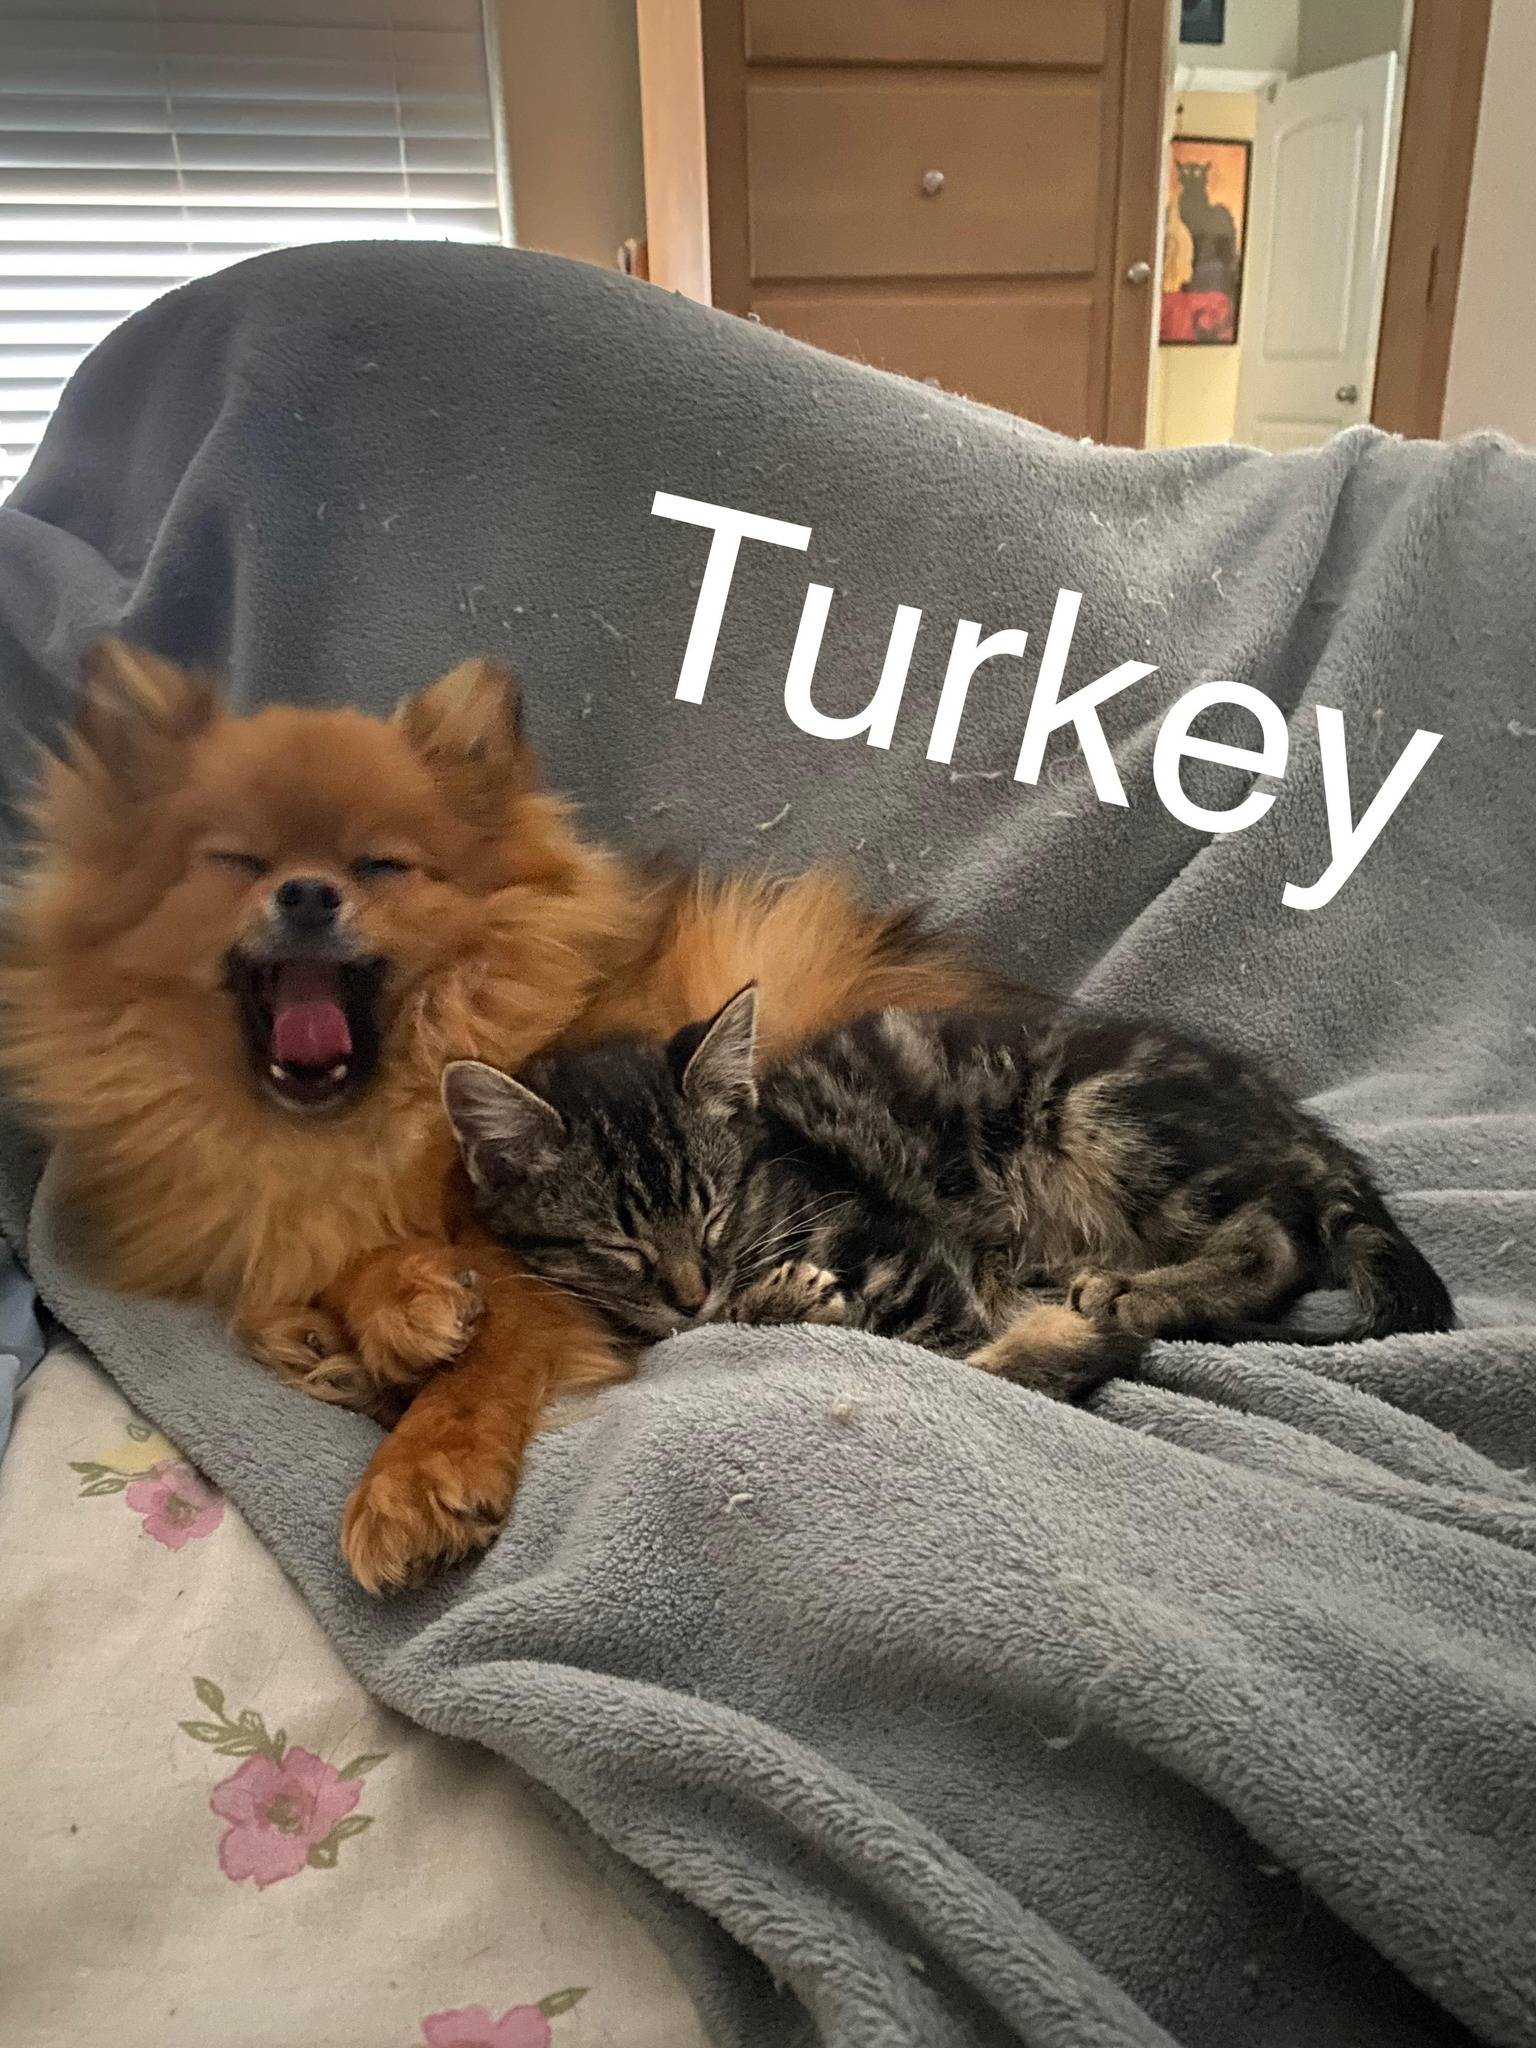 Turkey (cat)